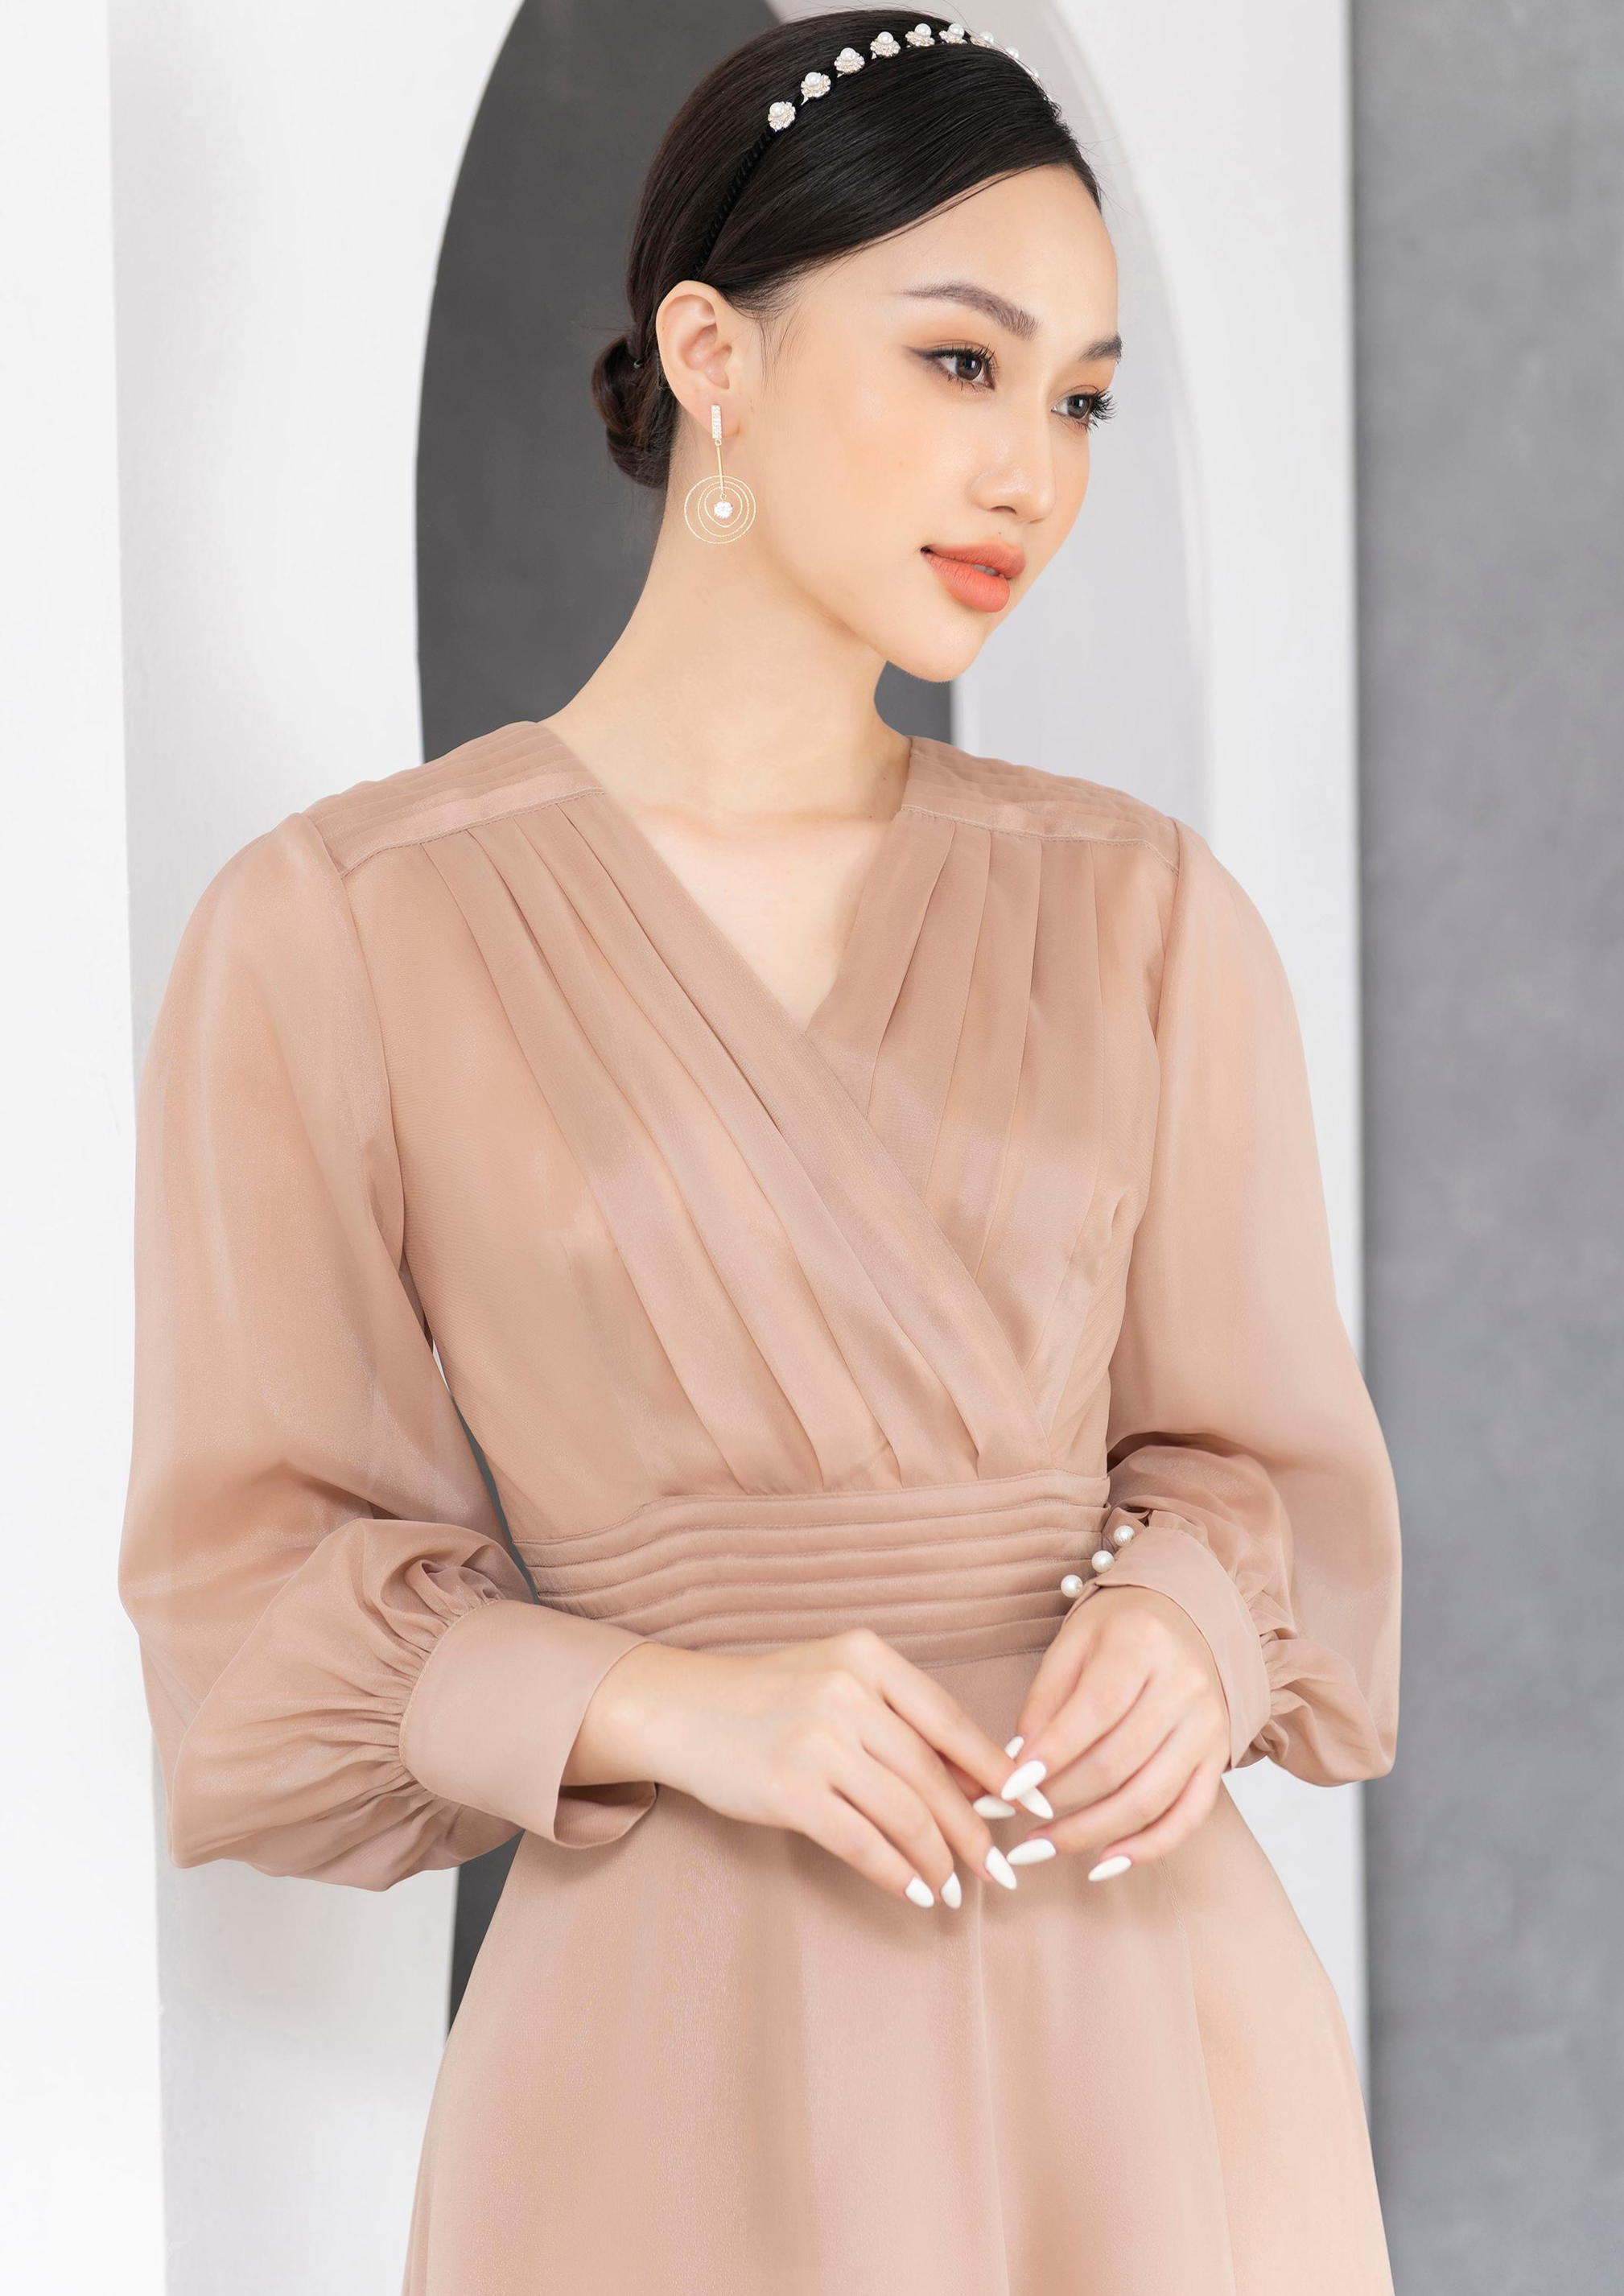 Mẫu đồng phục váy liền đẹp cho bạn gái công sở diện Thu Đông 2021 -  Diendan.japan.net.vn